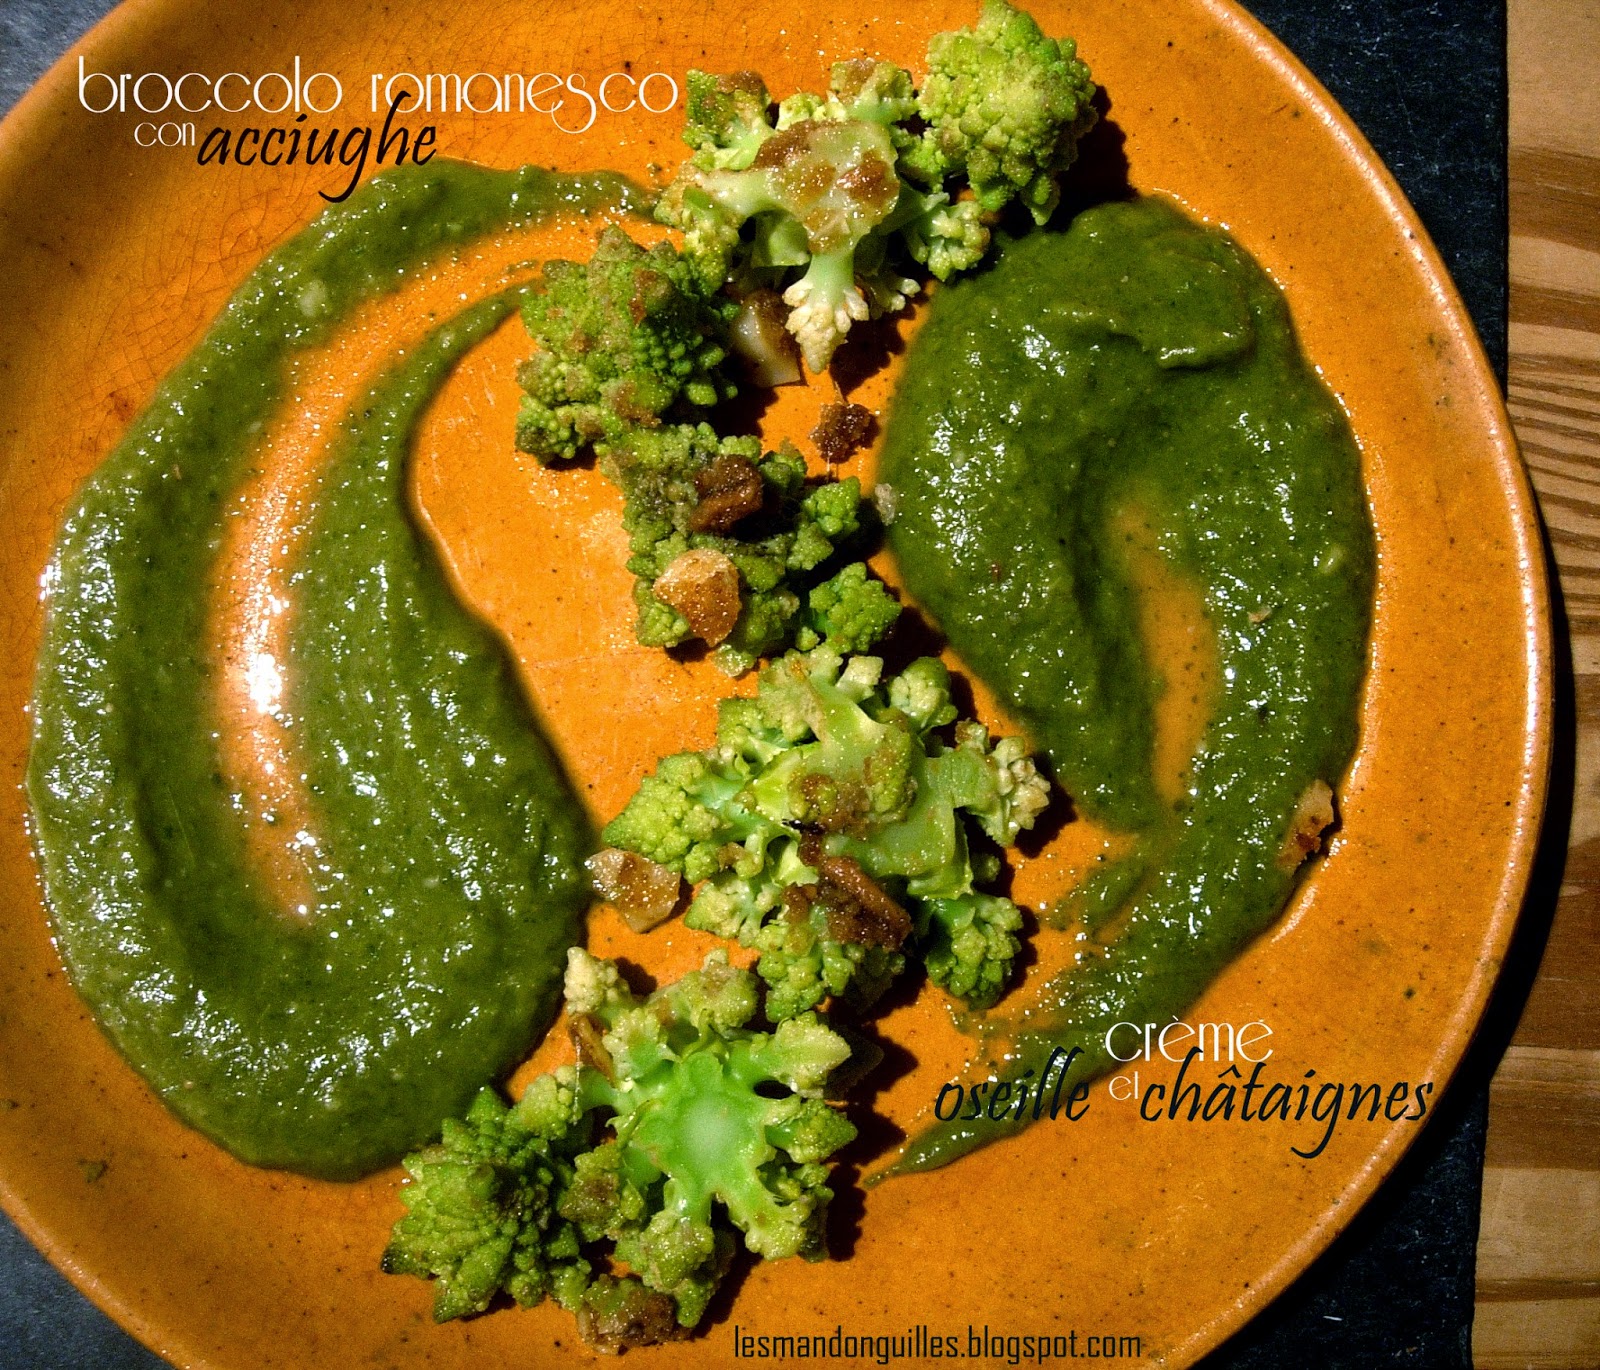 broccolo romanesco saltato con acciughe e crema d' acetosa e castagne